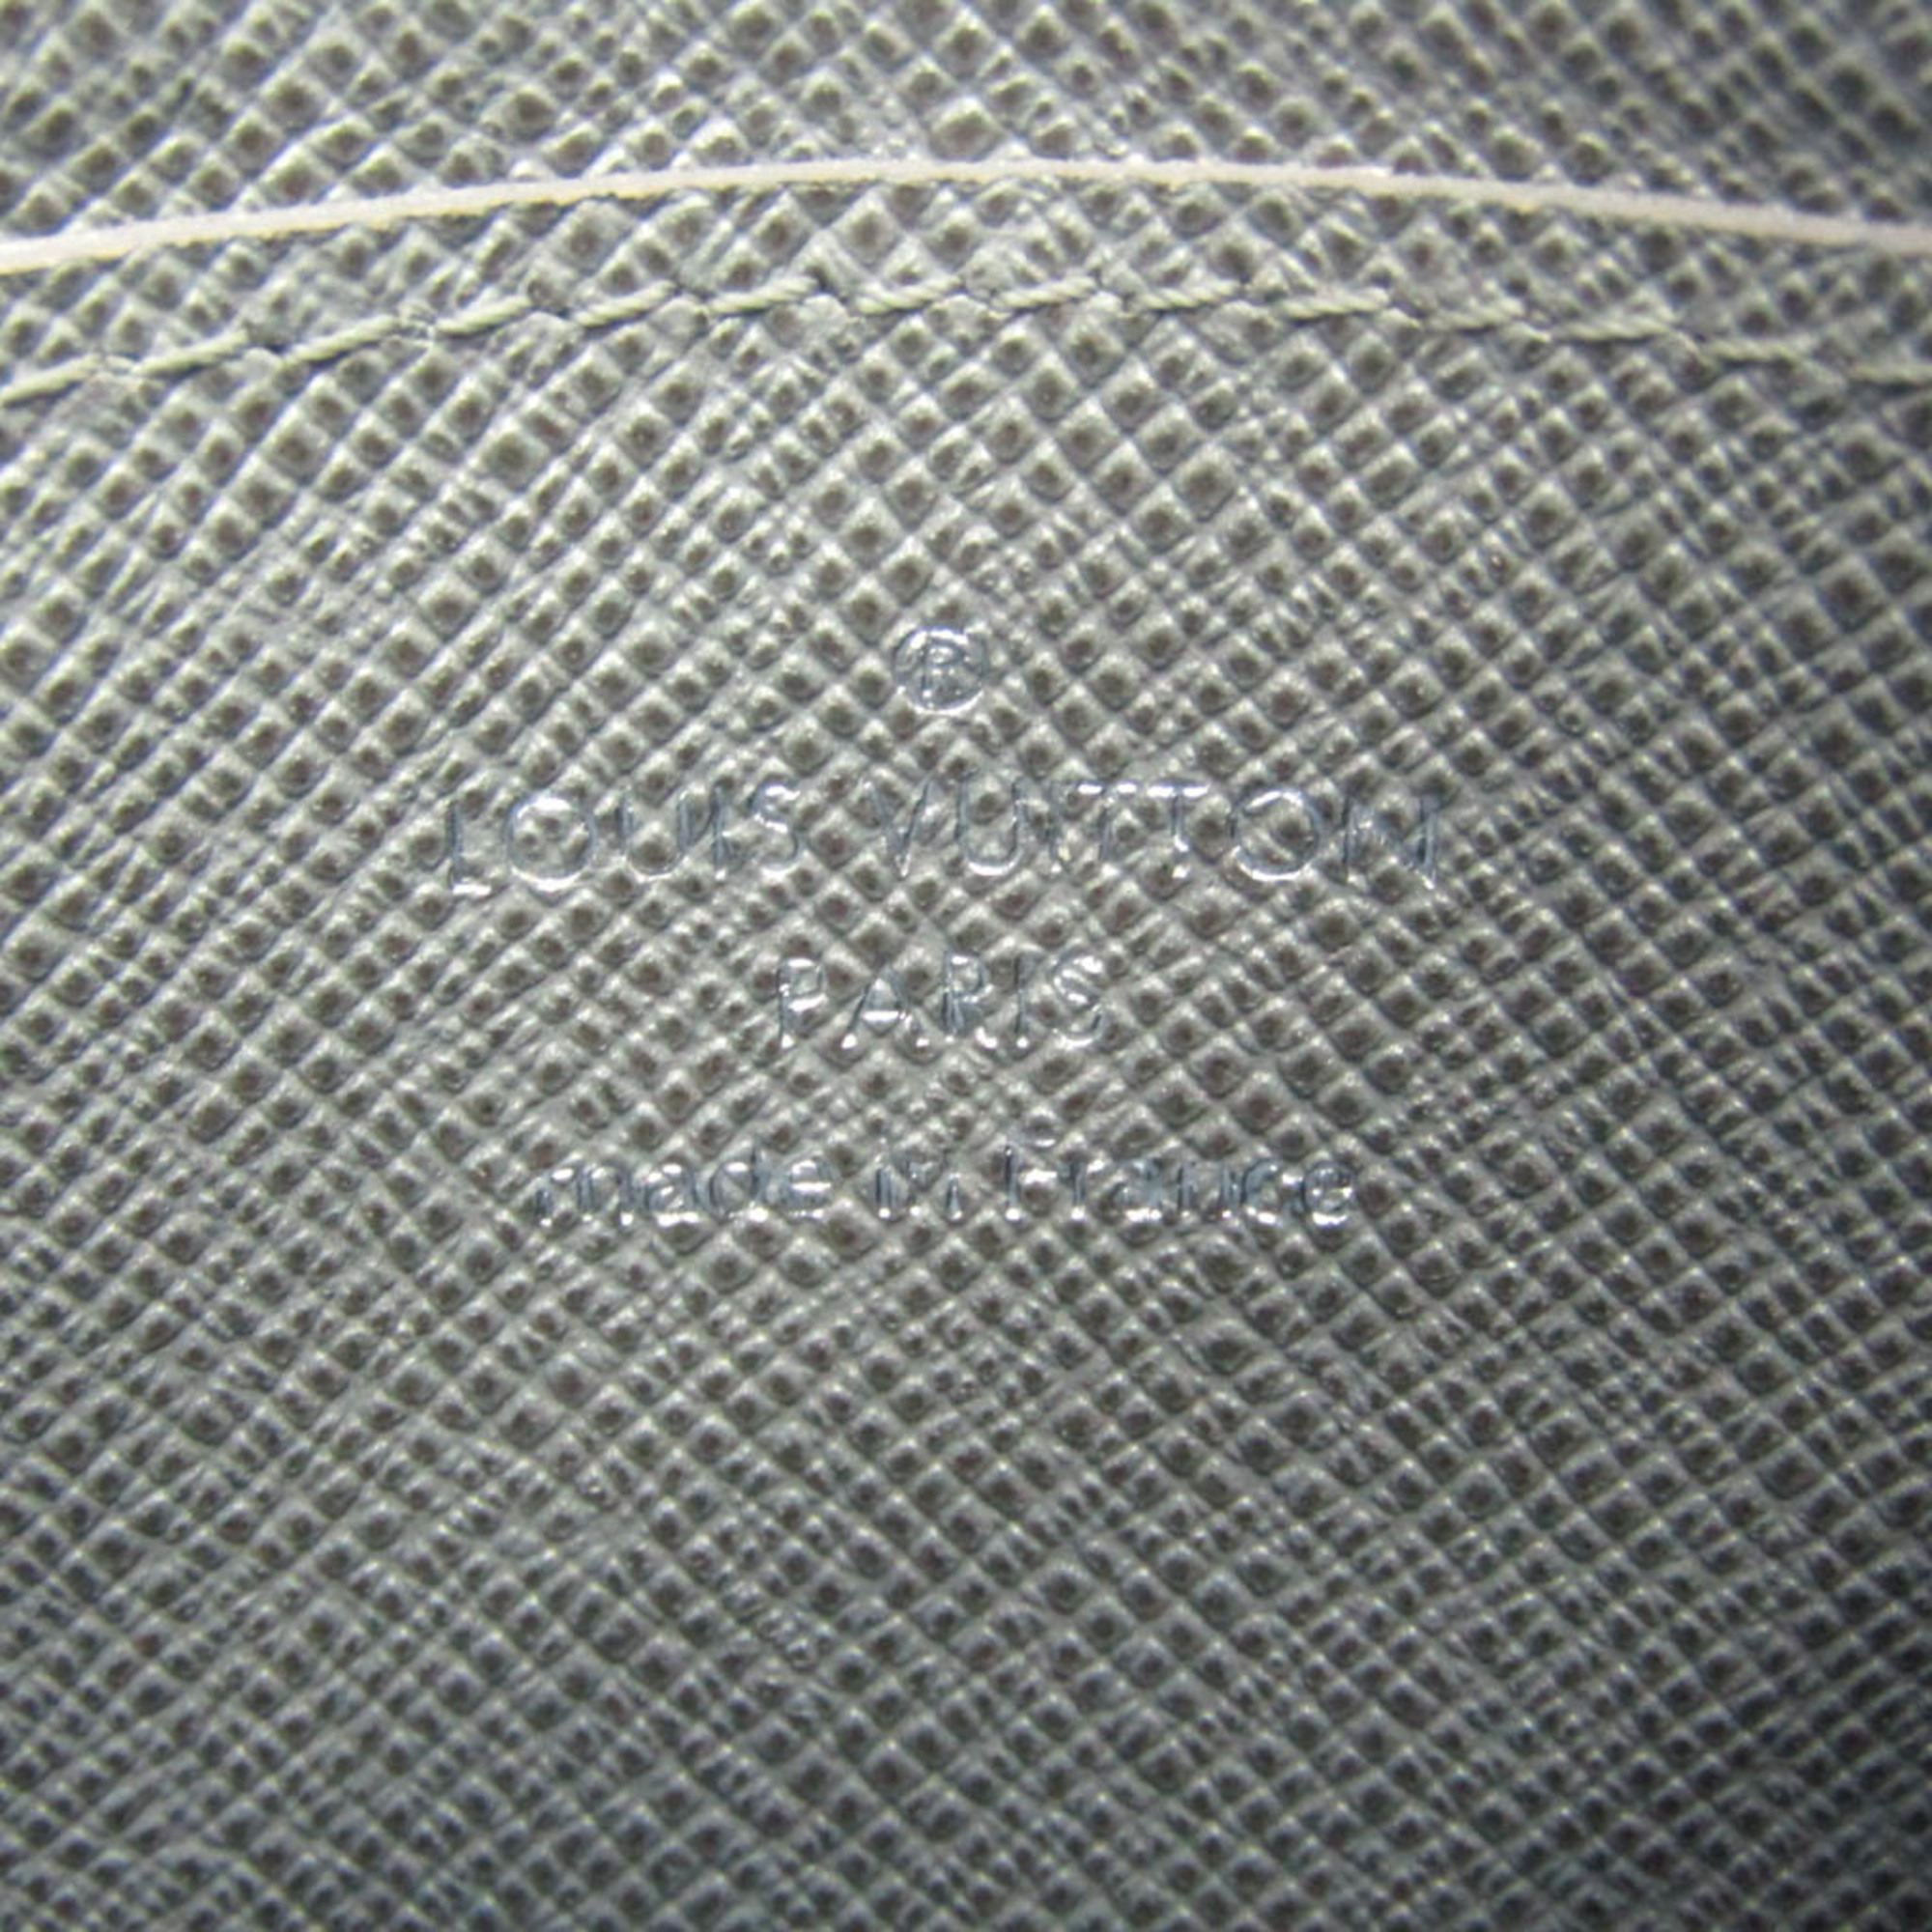 Louis Vuitton Taiga M32603 Taiga Leather Coin Purse/coin Case Glacier